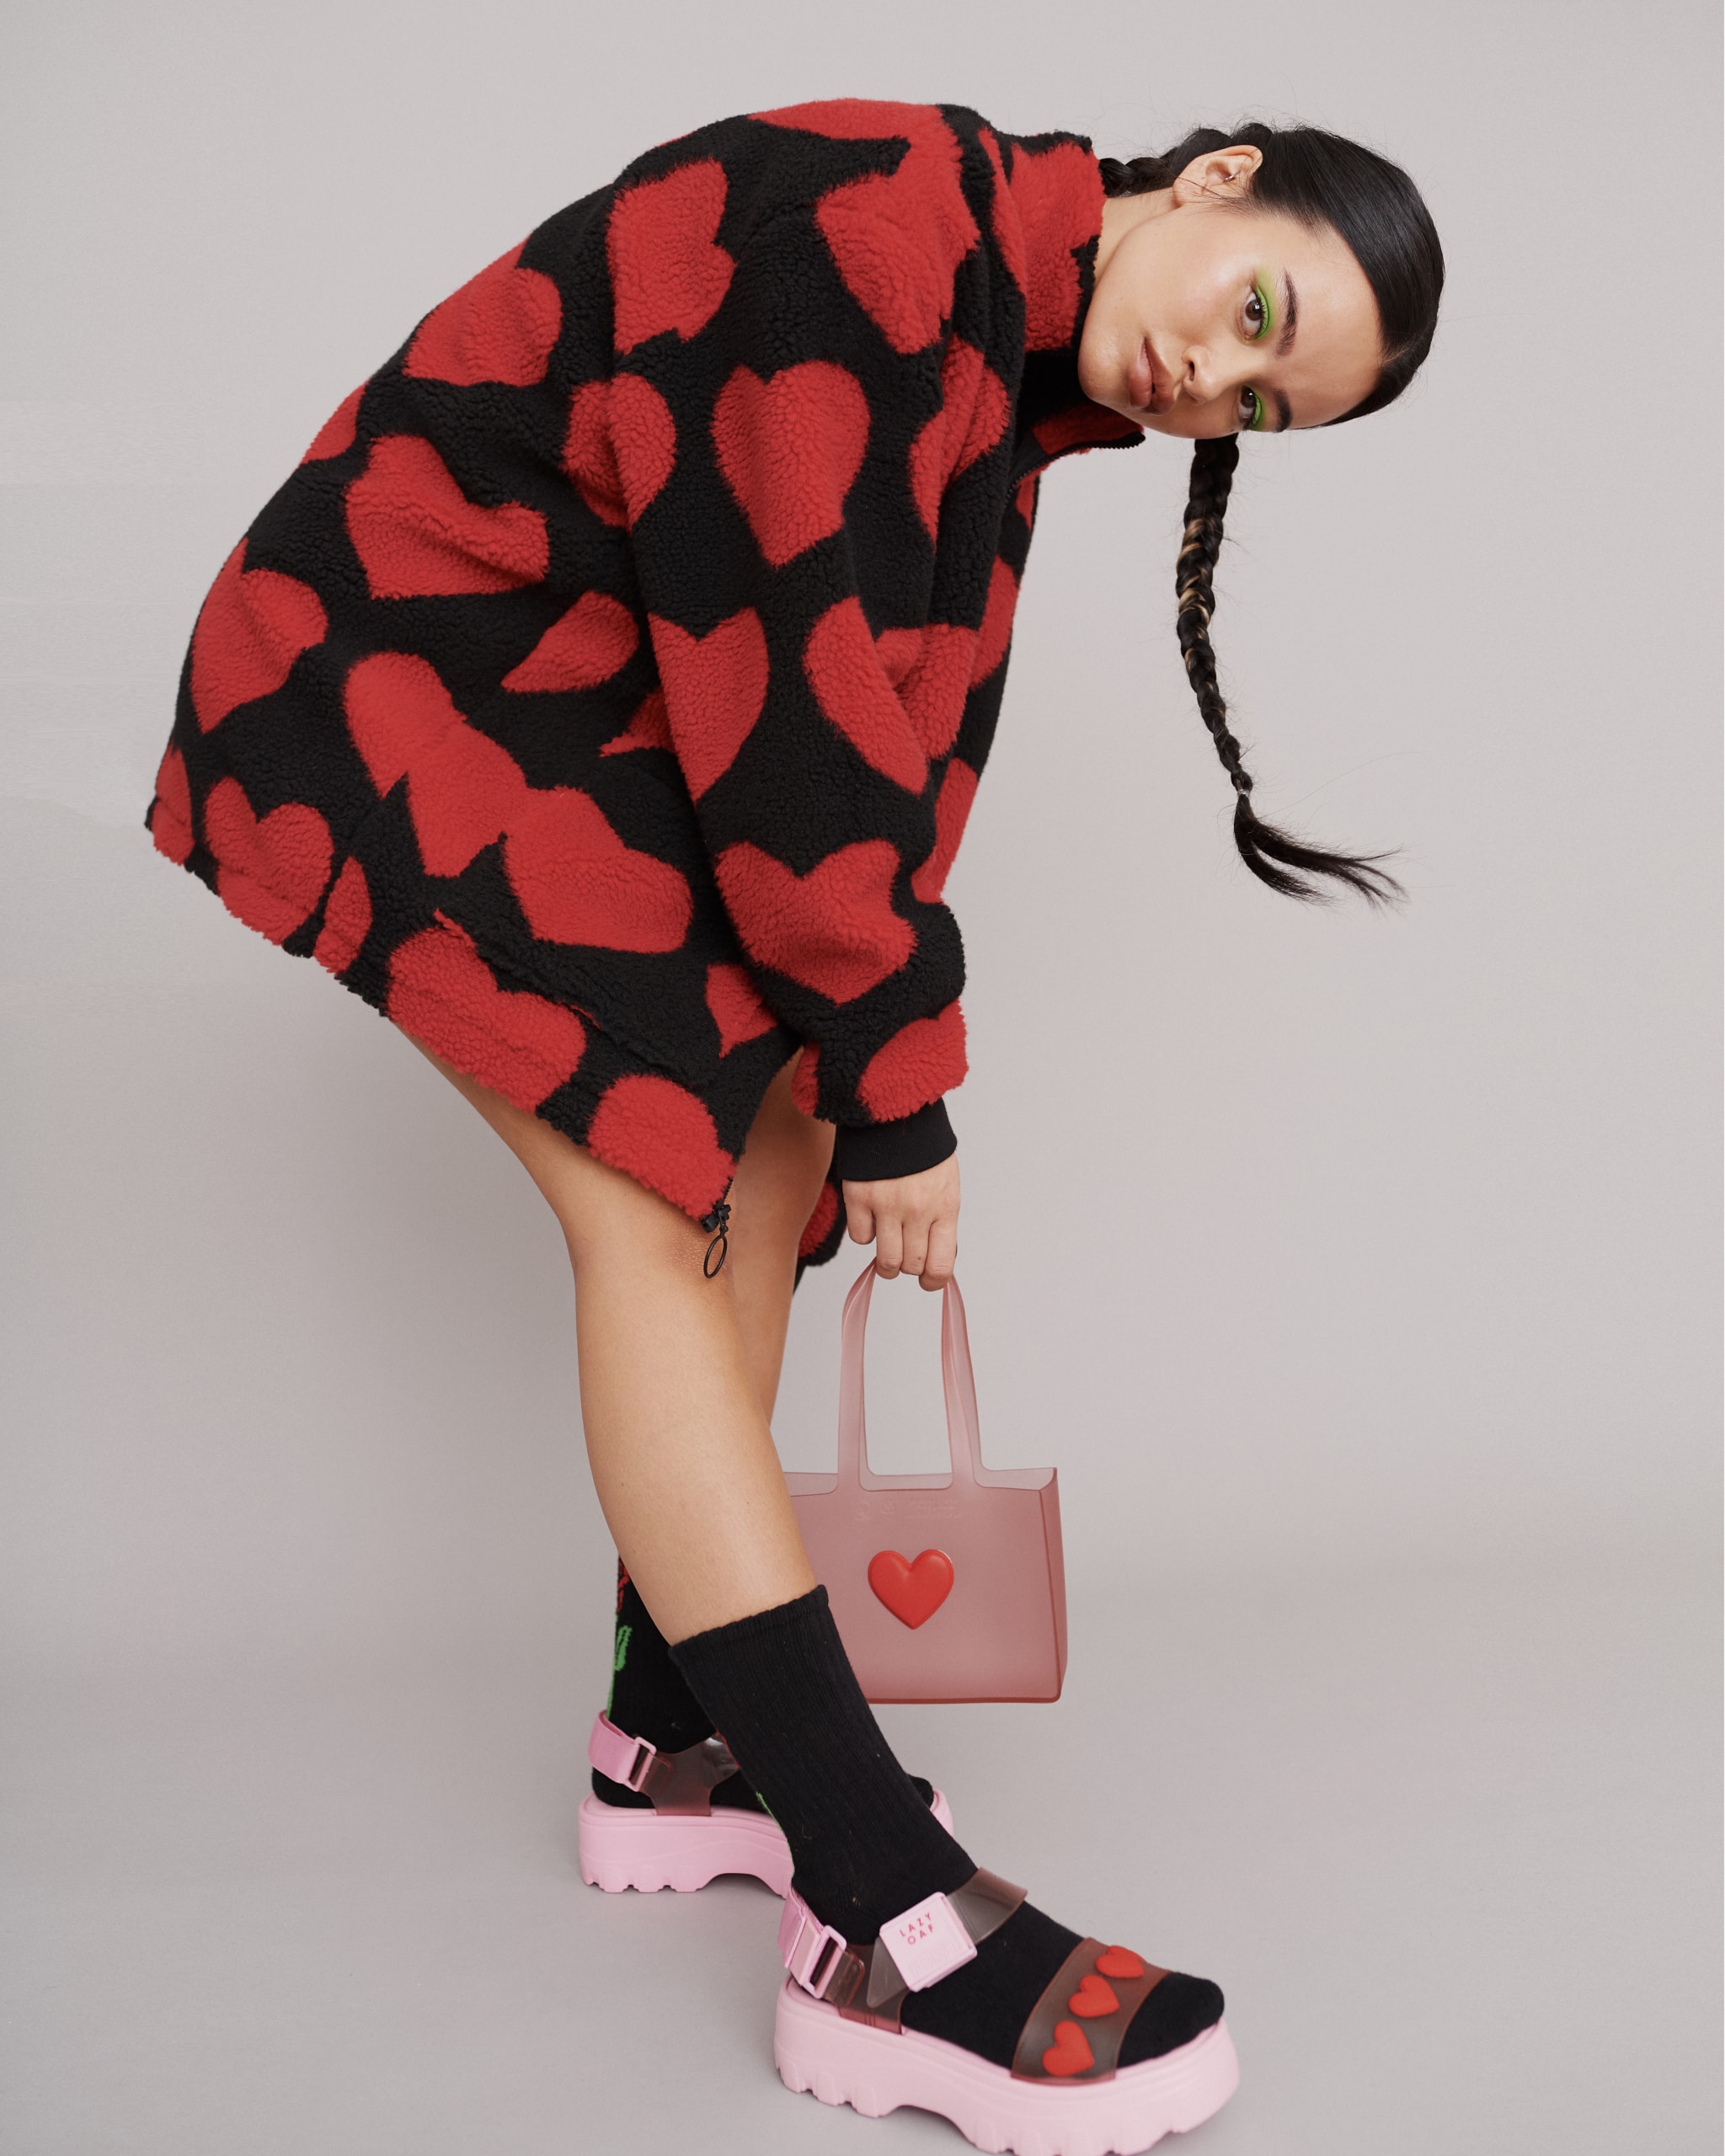 melissa lazy oaf jelly platform sandals collaboration heart jacket socks bag